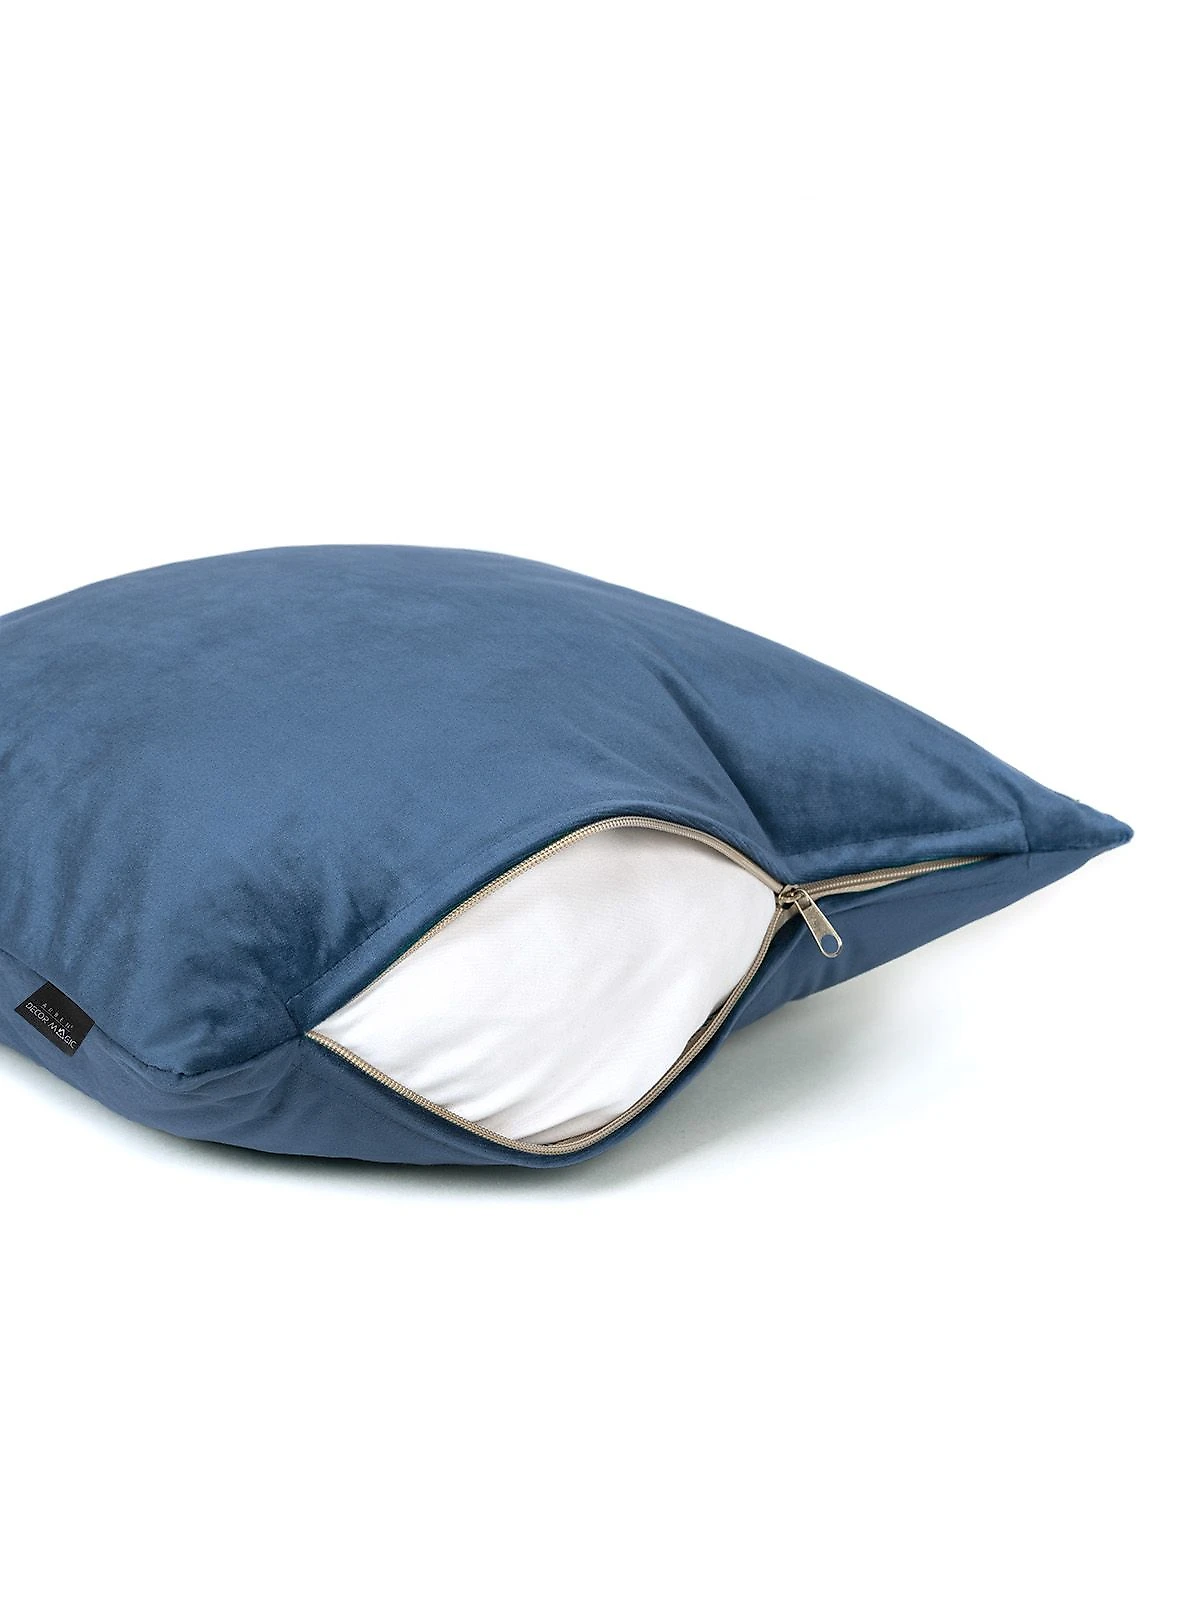 Декоративная подушка MONACO DENIM 45*45 см